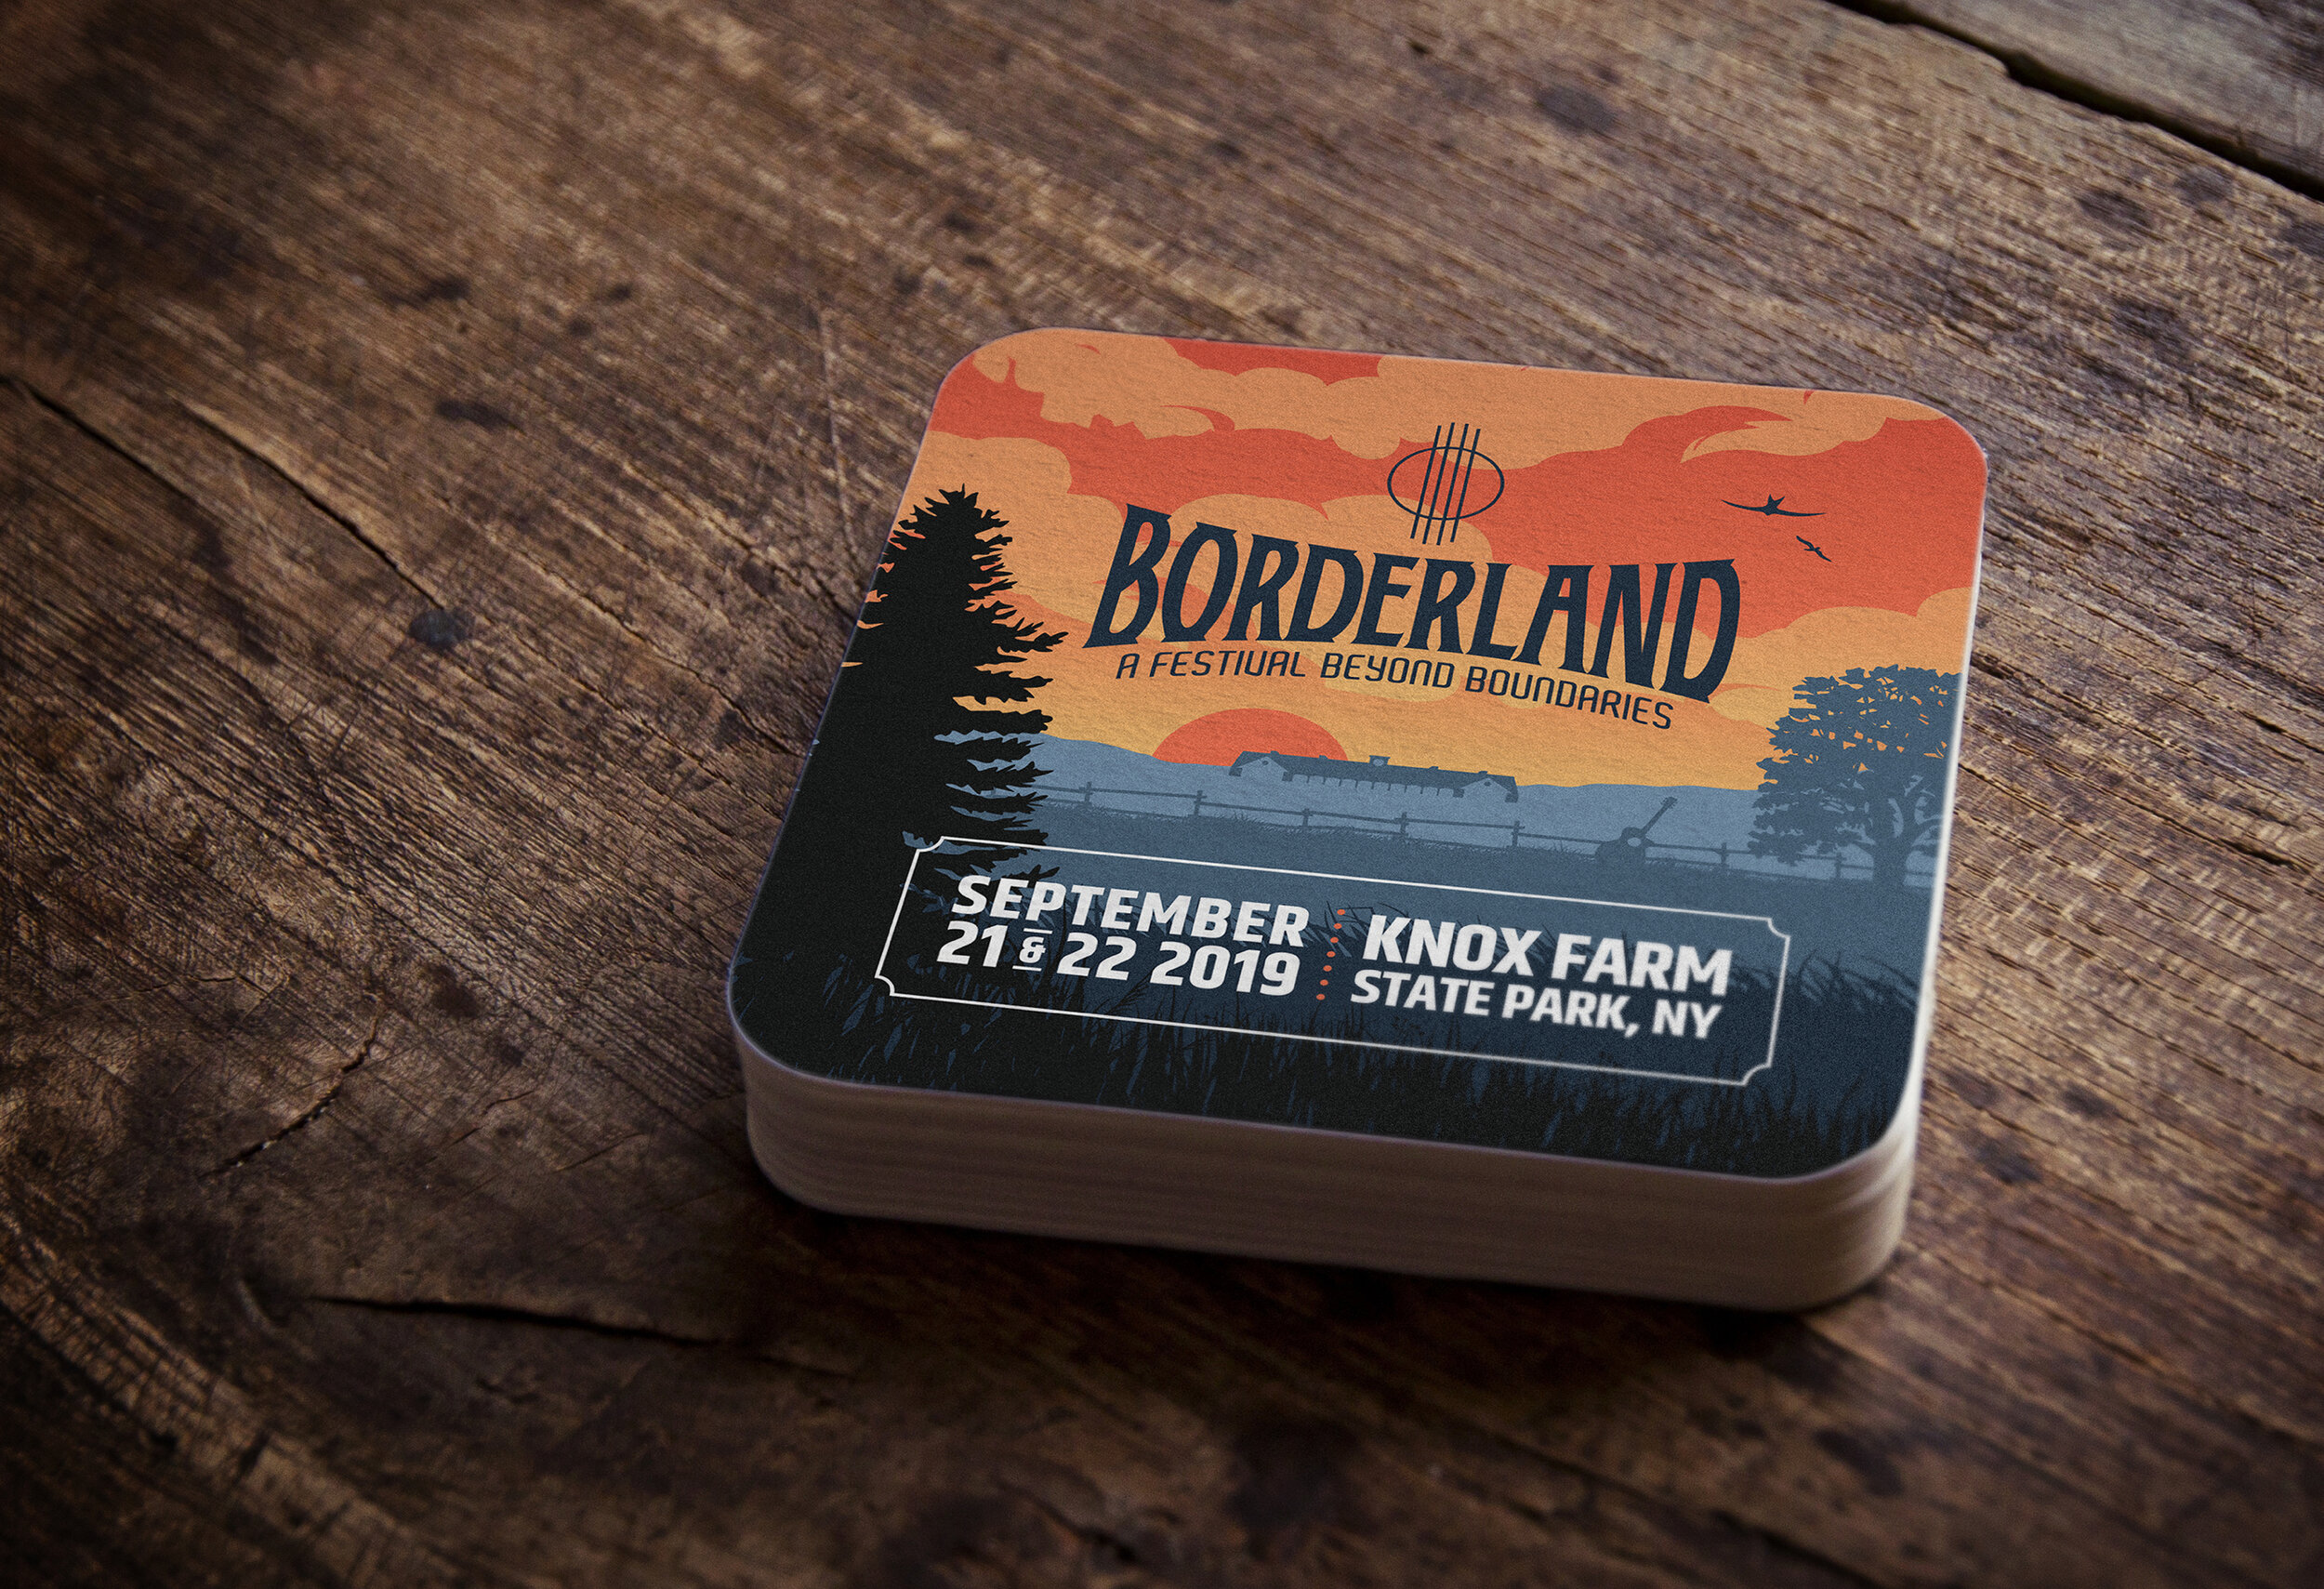 Borderland 2019 Festival Art Direction